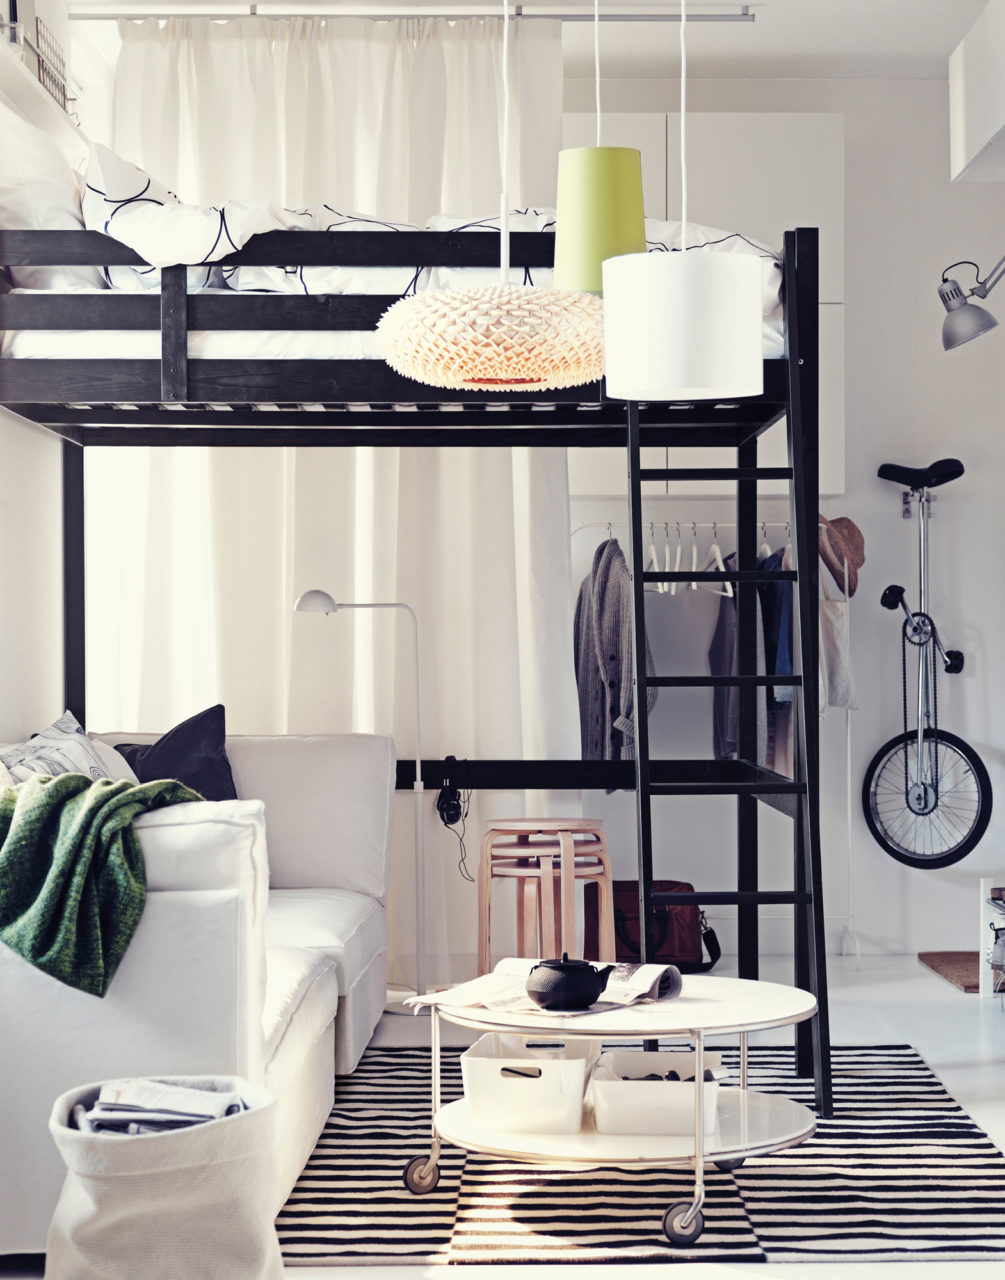 Ett ljust rum med en vit soffa stående under en hög, svart loftsäng i lätt stil. På väggen hänger kläder och en enhjuling.